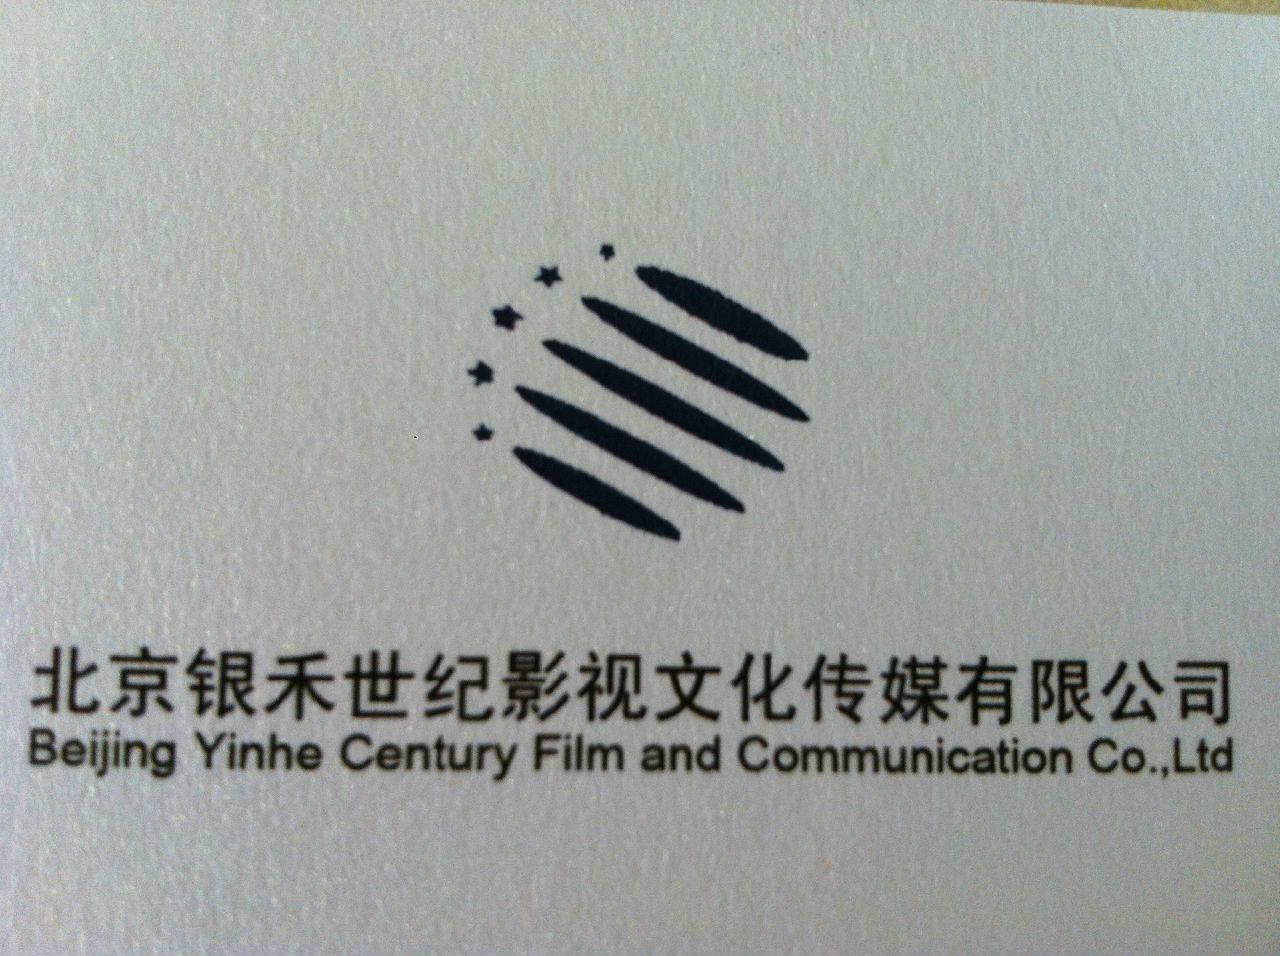 北京銀禾世紀影視文化傳媒有限公司